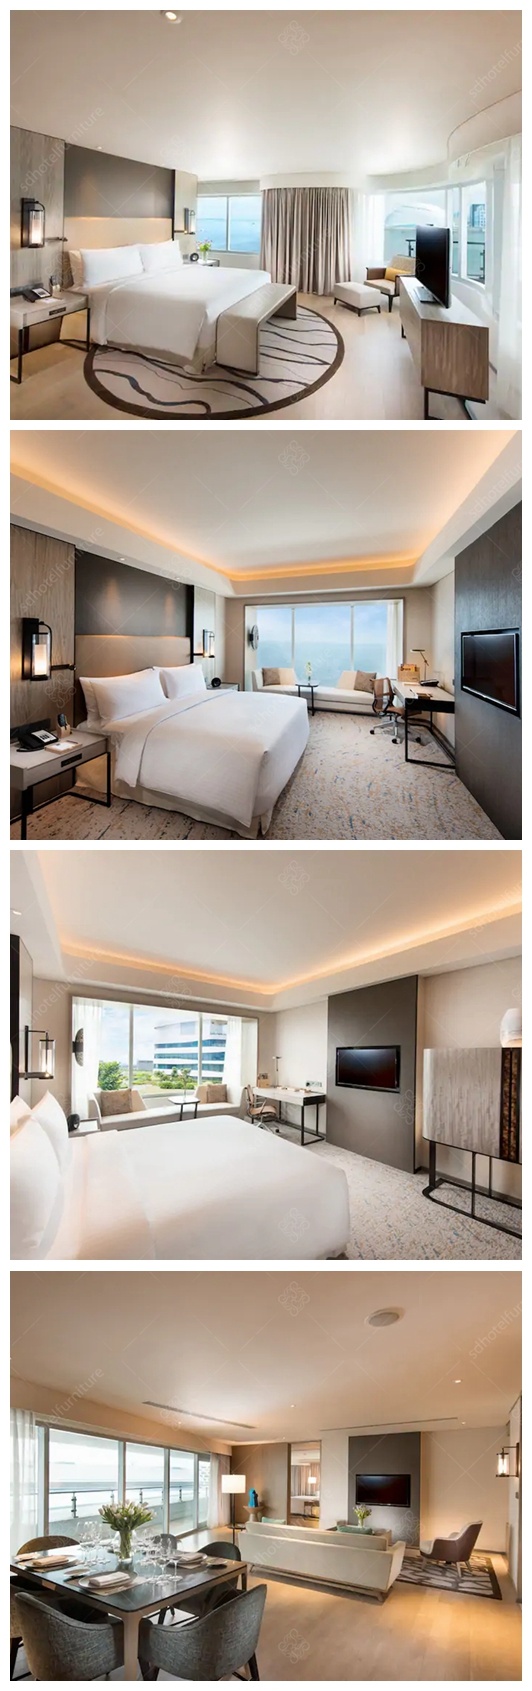 Modern King Bed Luxury Hotel Bedroom Furniture for 5 Star Hotel Room Furniture Set